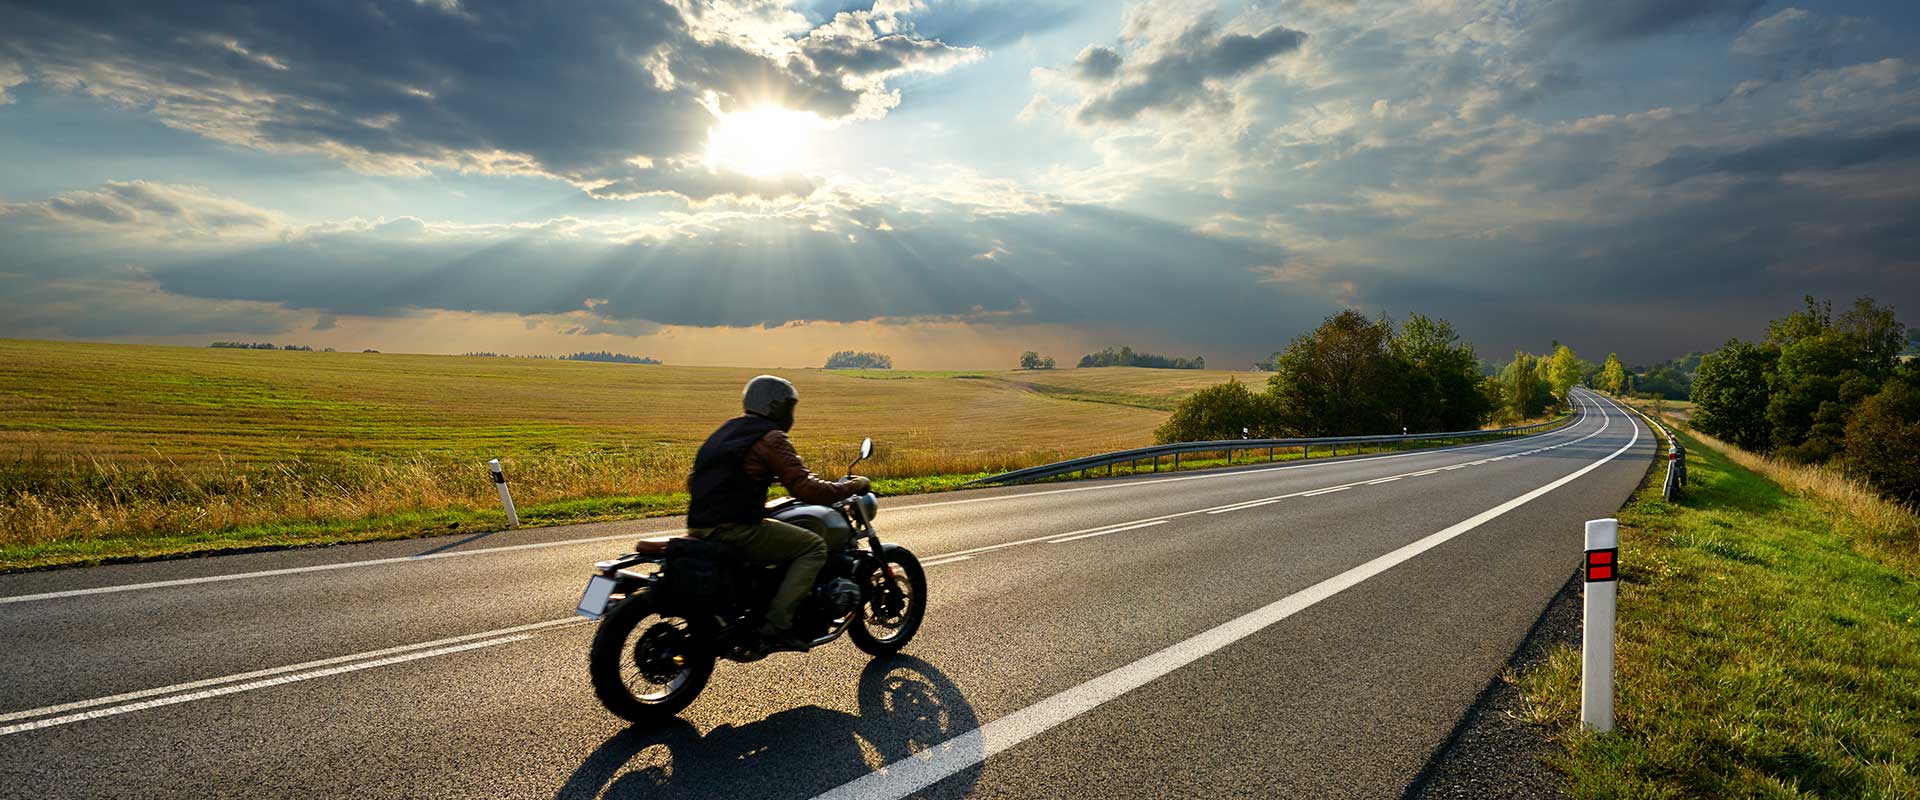 Motorrad und Moped